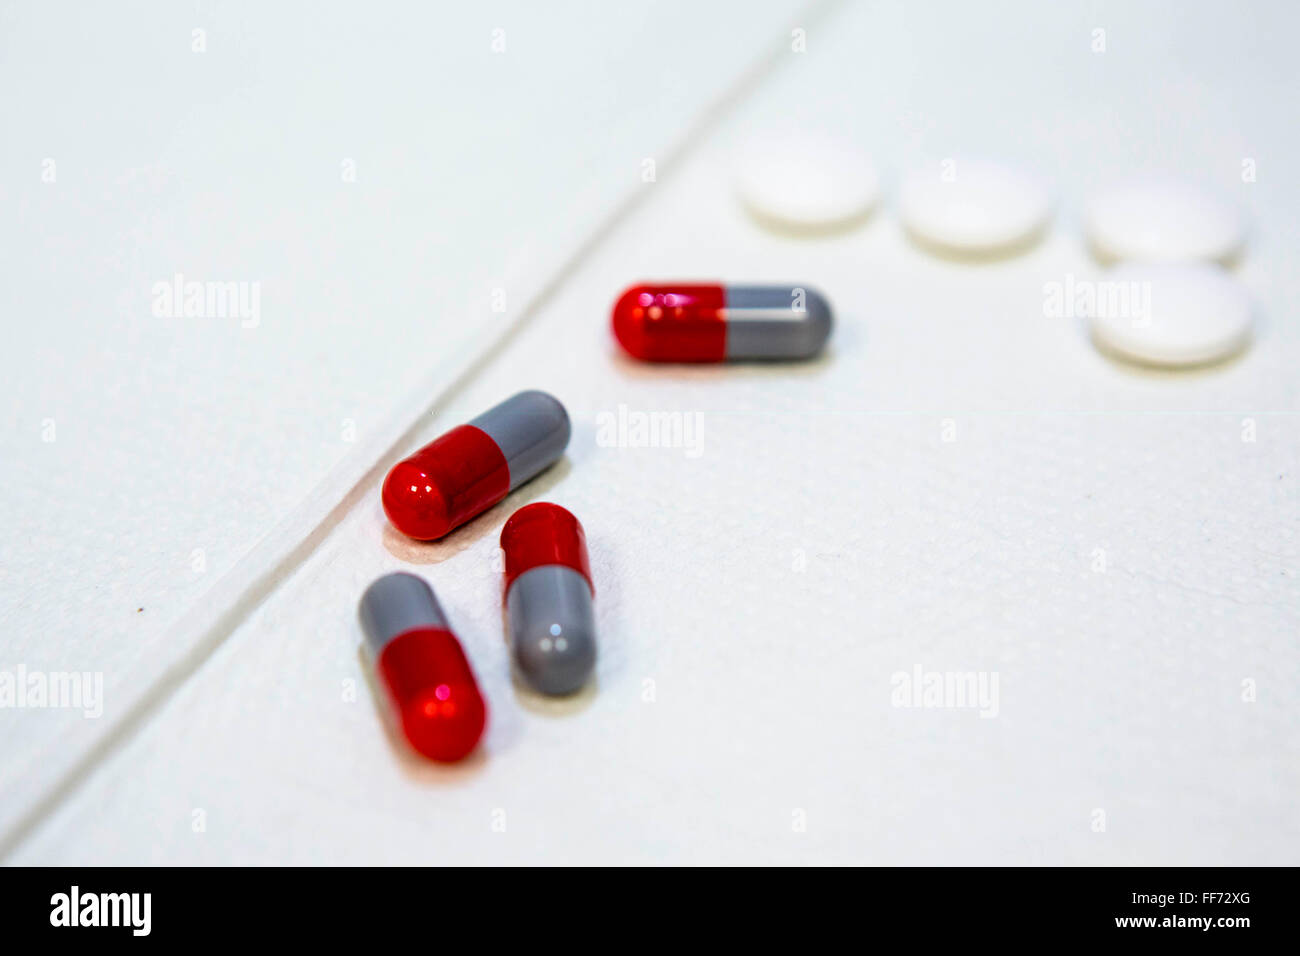 Medikamente Tabletten für Tuberkulose in einer TB-Klinik in London, England, UK. Die roten und grauen Tabletten sind Rifampicin und weiße Tabletten Pyrazinamid.  Sie müssen gemeinsam getroffen werden, um die bakterielle Infektion zu behandeln und zu verhindern, dass Resistenzen. Stockfoto